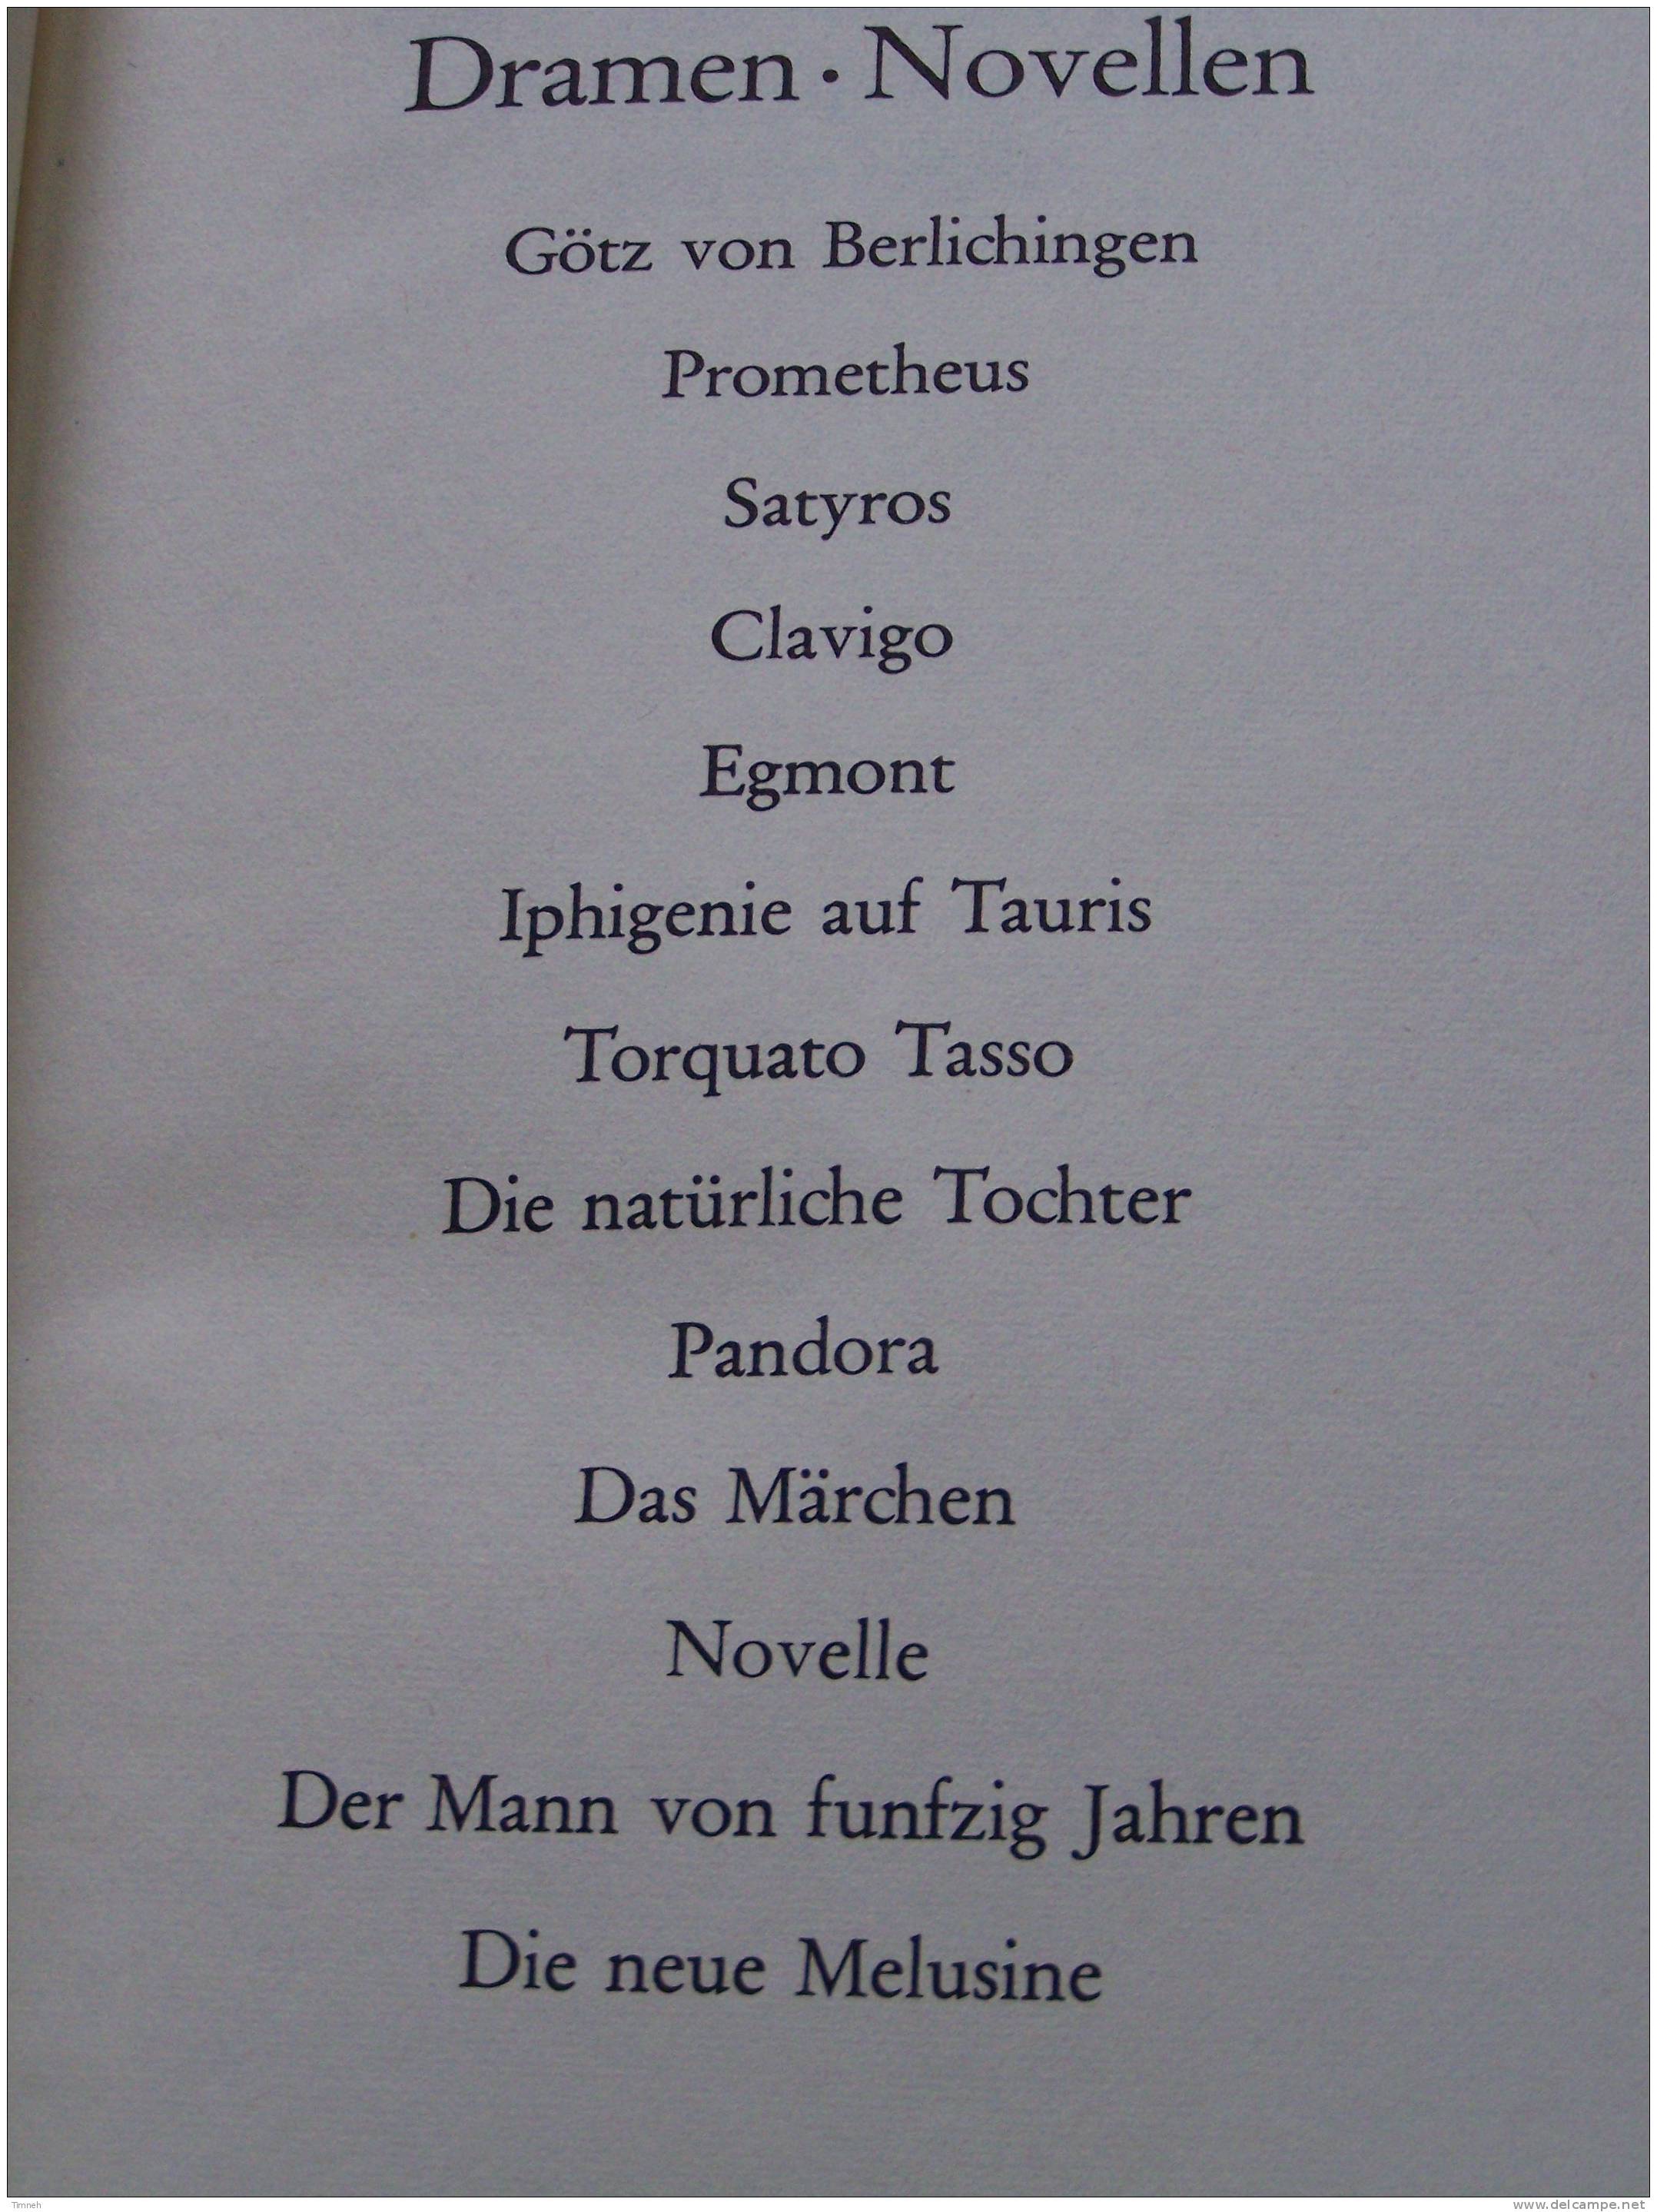 GOETHE WERKE - 6 BANDEN TOMES - Insel Verlag 1965 - WERTHER MEISTER FAUST GEDICHTE DICHTUNG WARHEIT - Autores Internacionales